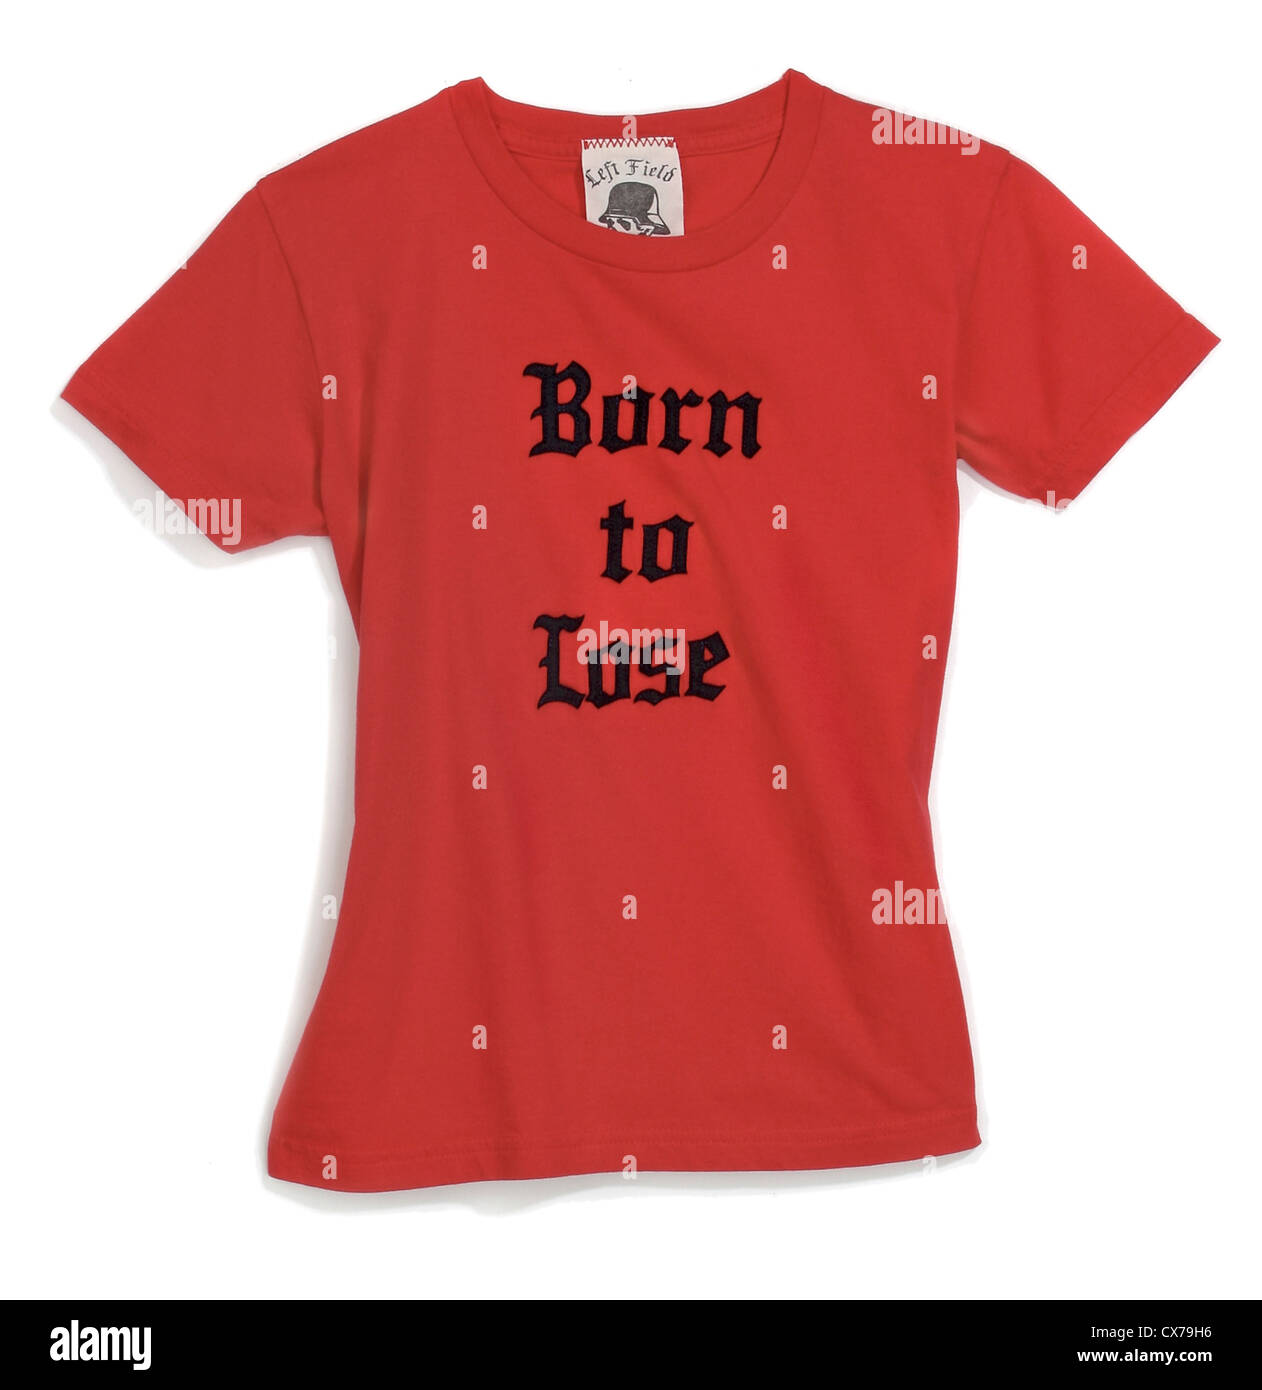 Geboren zu verlieren rotes T-shirt fotografiert auf weißem Hintergrund Stockfoto